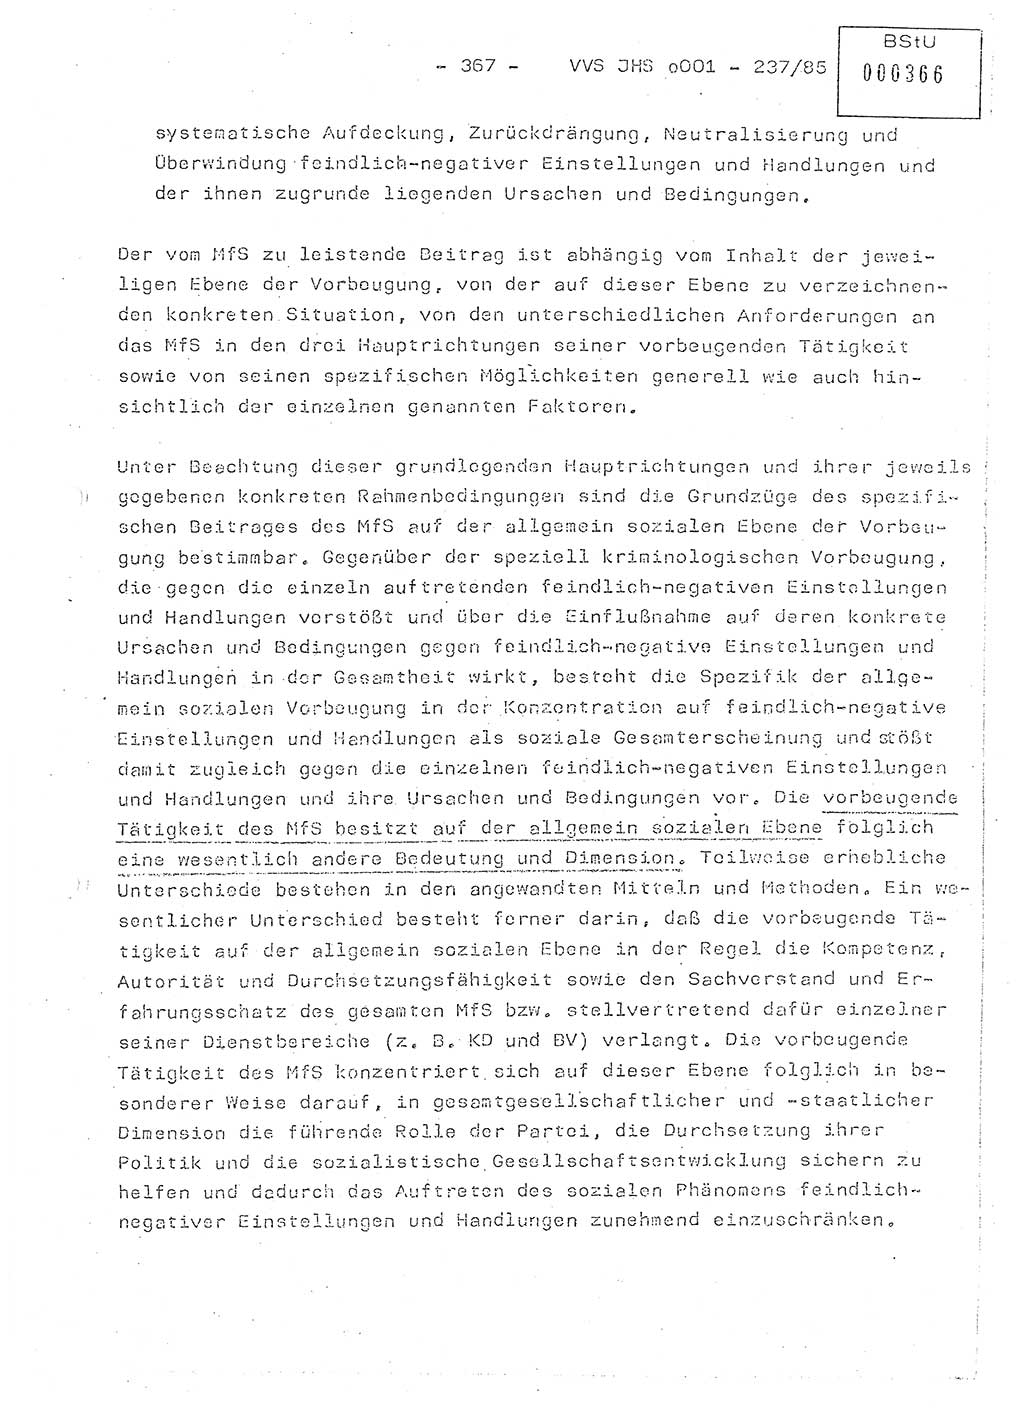 Dissertation Oberstleutnant Peter Jakulski (JHS), Oberstleutnat Christian Rudolph (HA Ⅸ), Major Horst Böttger (ZMD), Major Wolfgang Grüneberg (JHS), Major Albert Meutsch (JHS), Ministerium für Staatssicherheit (MfS) [Deutsche Demokratische Republik (DDR)], Juristische Hochschule (JHS), Vertrauliche Verschlußsache (VVS) o001-237/85, Potsdam 1985, Seite 367 (Diss. MfS DDR JHS VVS o001-237/85 1985, S. 367)